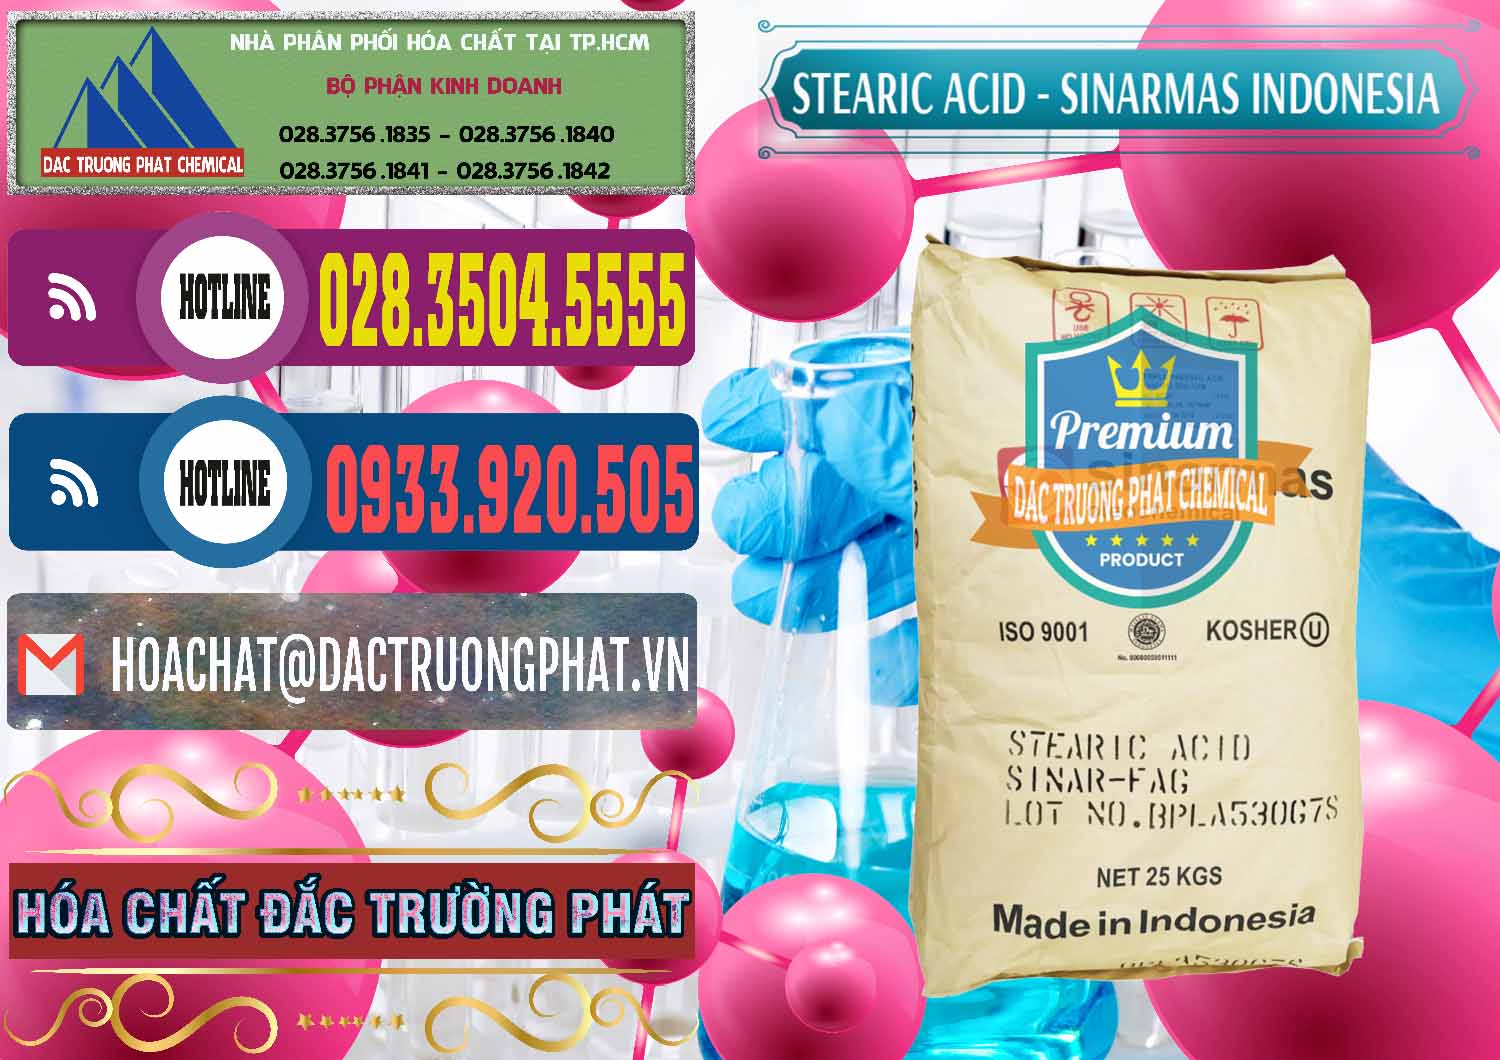 Nhà cung cấp & bán Axit Stearic - Stearic Acid Sinarmas Indonesia - 0389 - Đơn vị bán ( phân phối ) hóa chất tại TP.HCM - muabanhoachat.com.vn